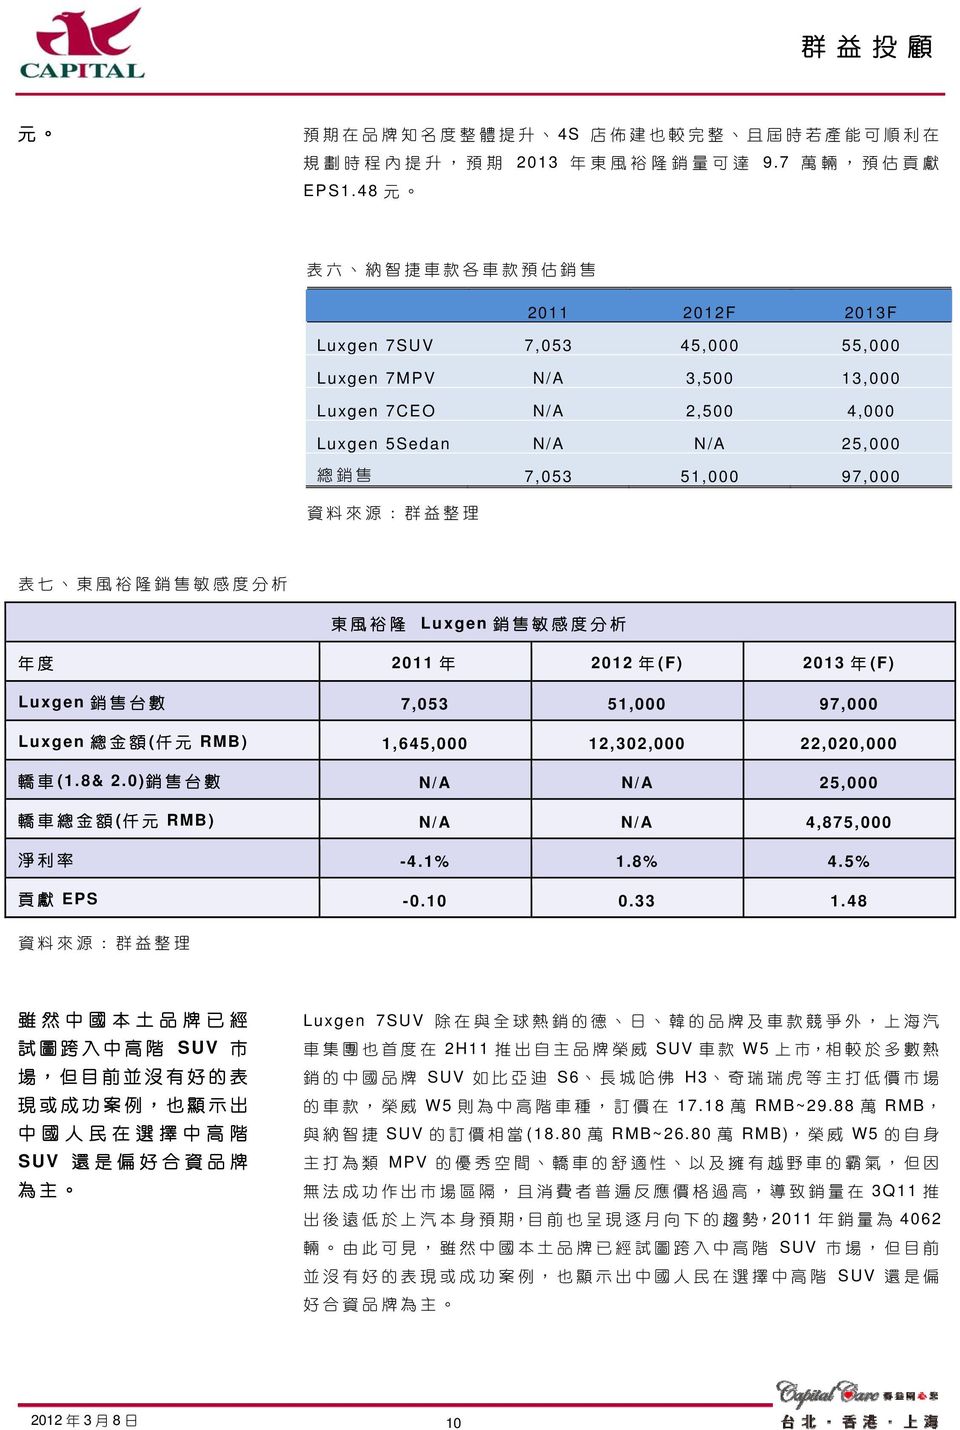 風 裕 隆 銷 售 敏 感 度 分 析 東 風 裕 隆 Luxgen 銷 售 敏 感 度 分 析 年 度 2011 年 2012 年 (F) 2013 年 (F) Luxgen 銷 售 台 數 7,053 51,000 97,000 Luxgen 總 金 額 ( 仟 元 RMB) 1,645,000 12,302,000 22,020,000 轎 車 (1.8& 2.